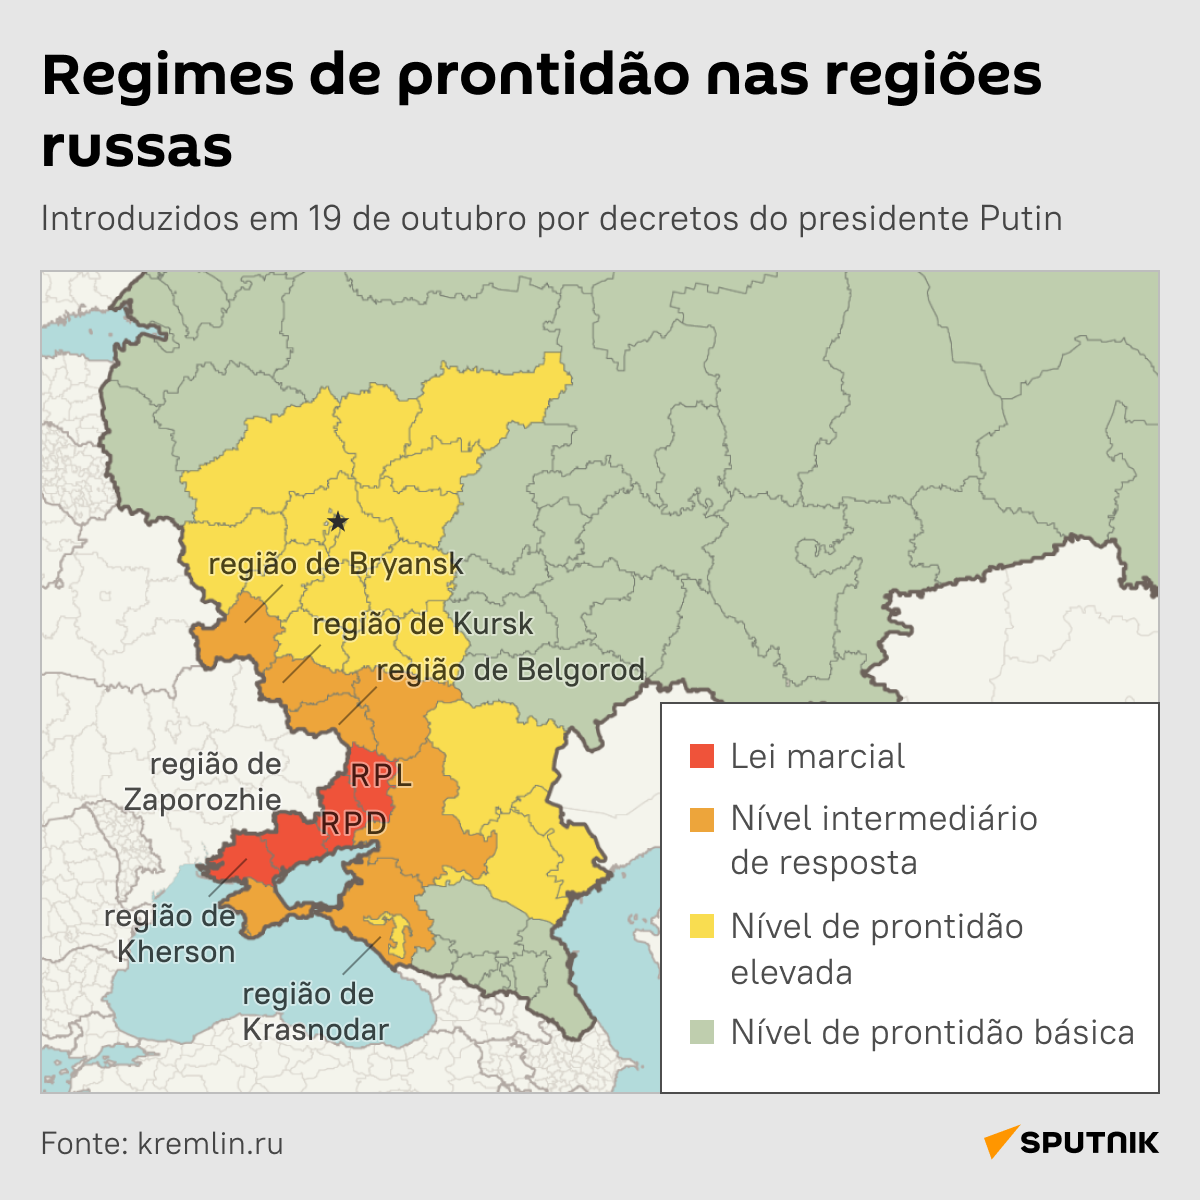 Regimes de prontidão em regiões russas após decretos do presidente Vladimir Putin - Sputnik Brasil